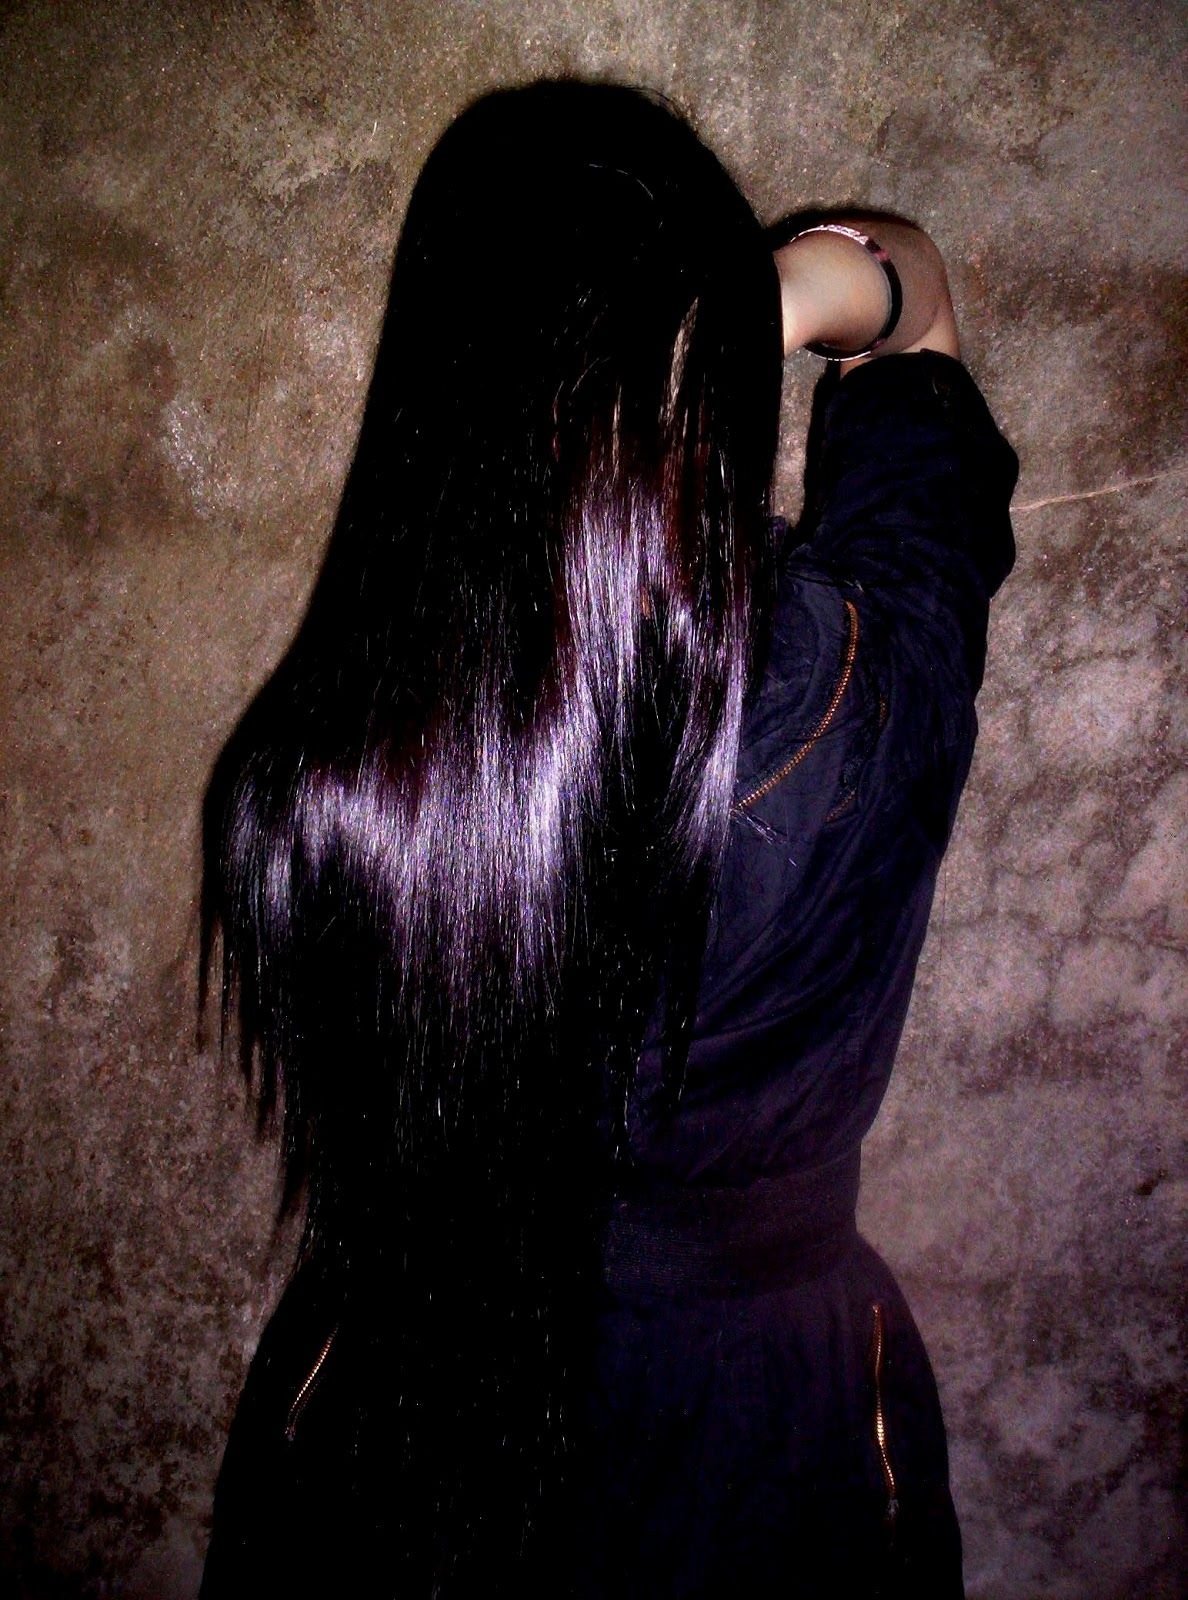 Черные волосы форум. Черные волосы с фиолетовым отливом. Чёрный цвет волос с фиолетовым отливом. Девушка с длинными черными волосами. Фиолетовый оттенок на темных волосах.